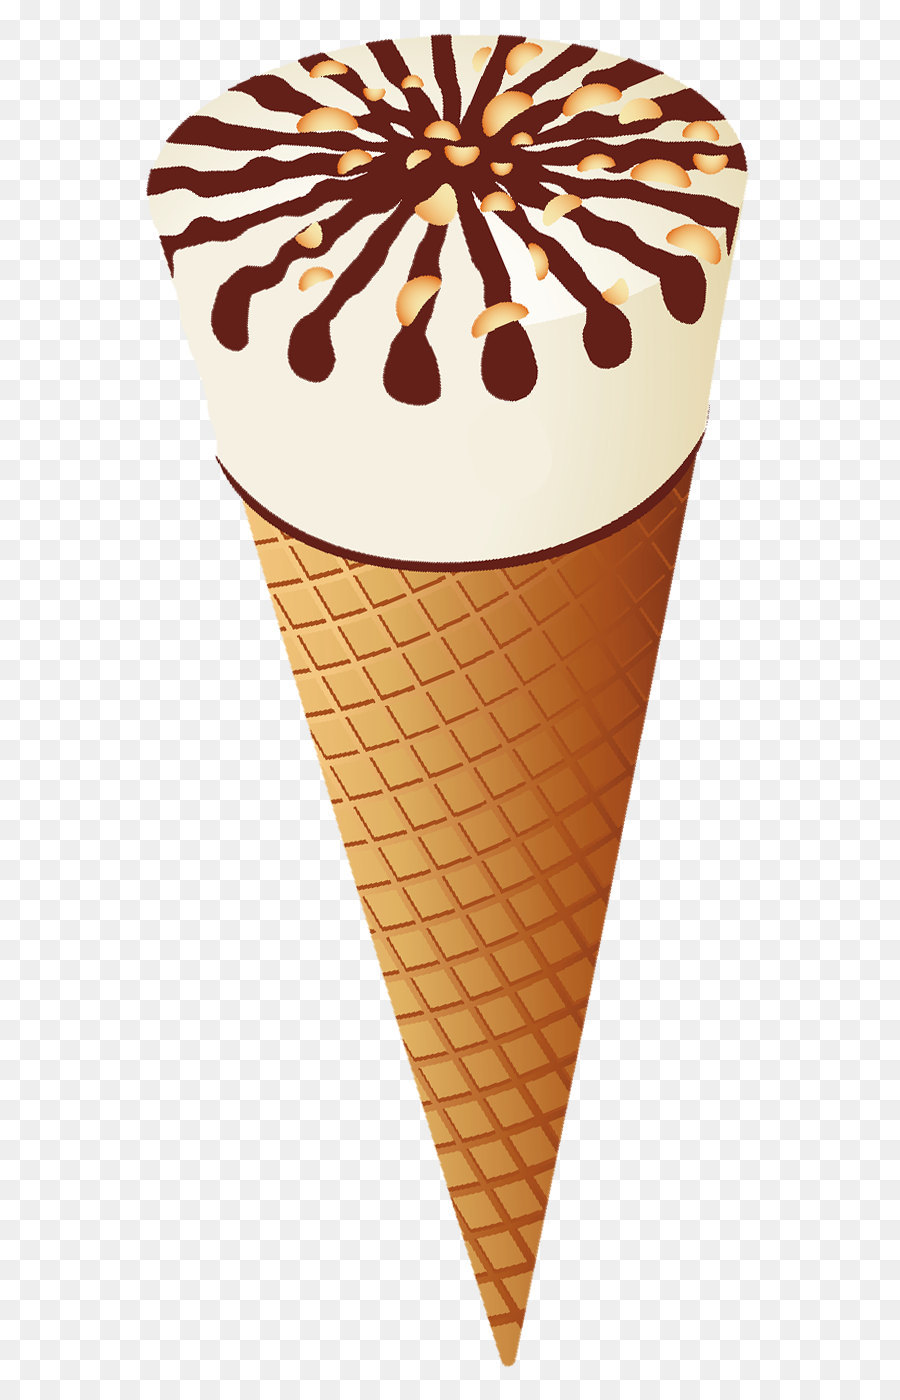 Ice cream cone Chocolate ice cream Clip art - Transparent Ice Cream Cone PNG Clipart png download - 635*1382 - Free Transparent Ice Cream png Download.